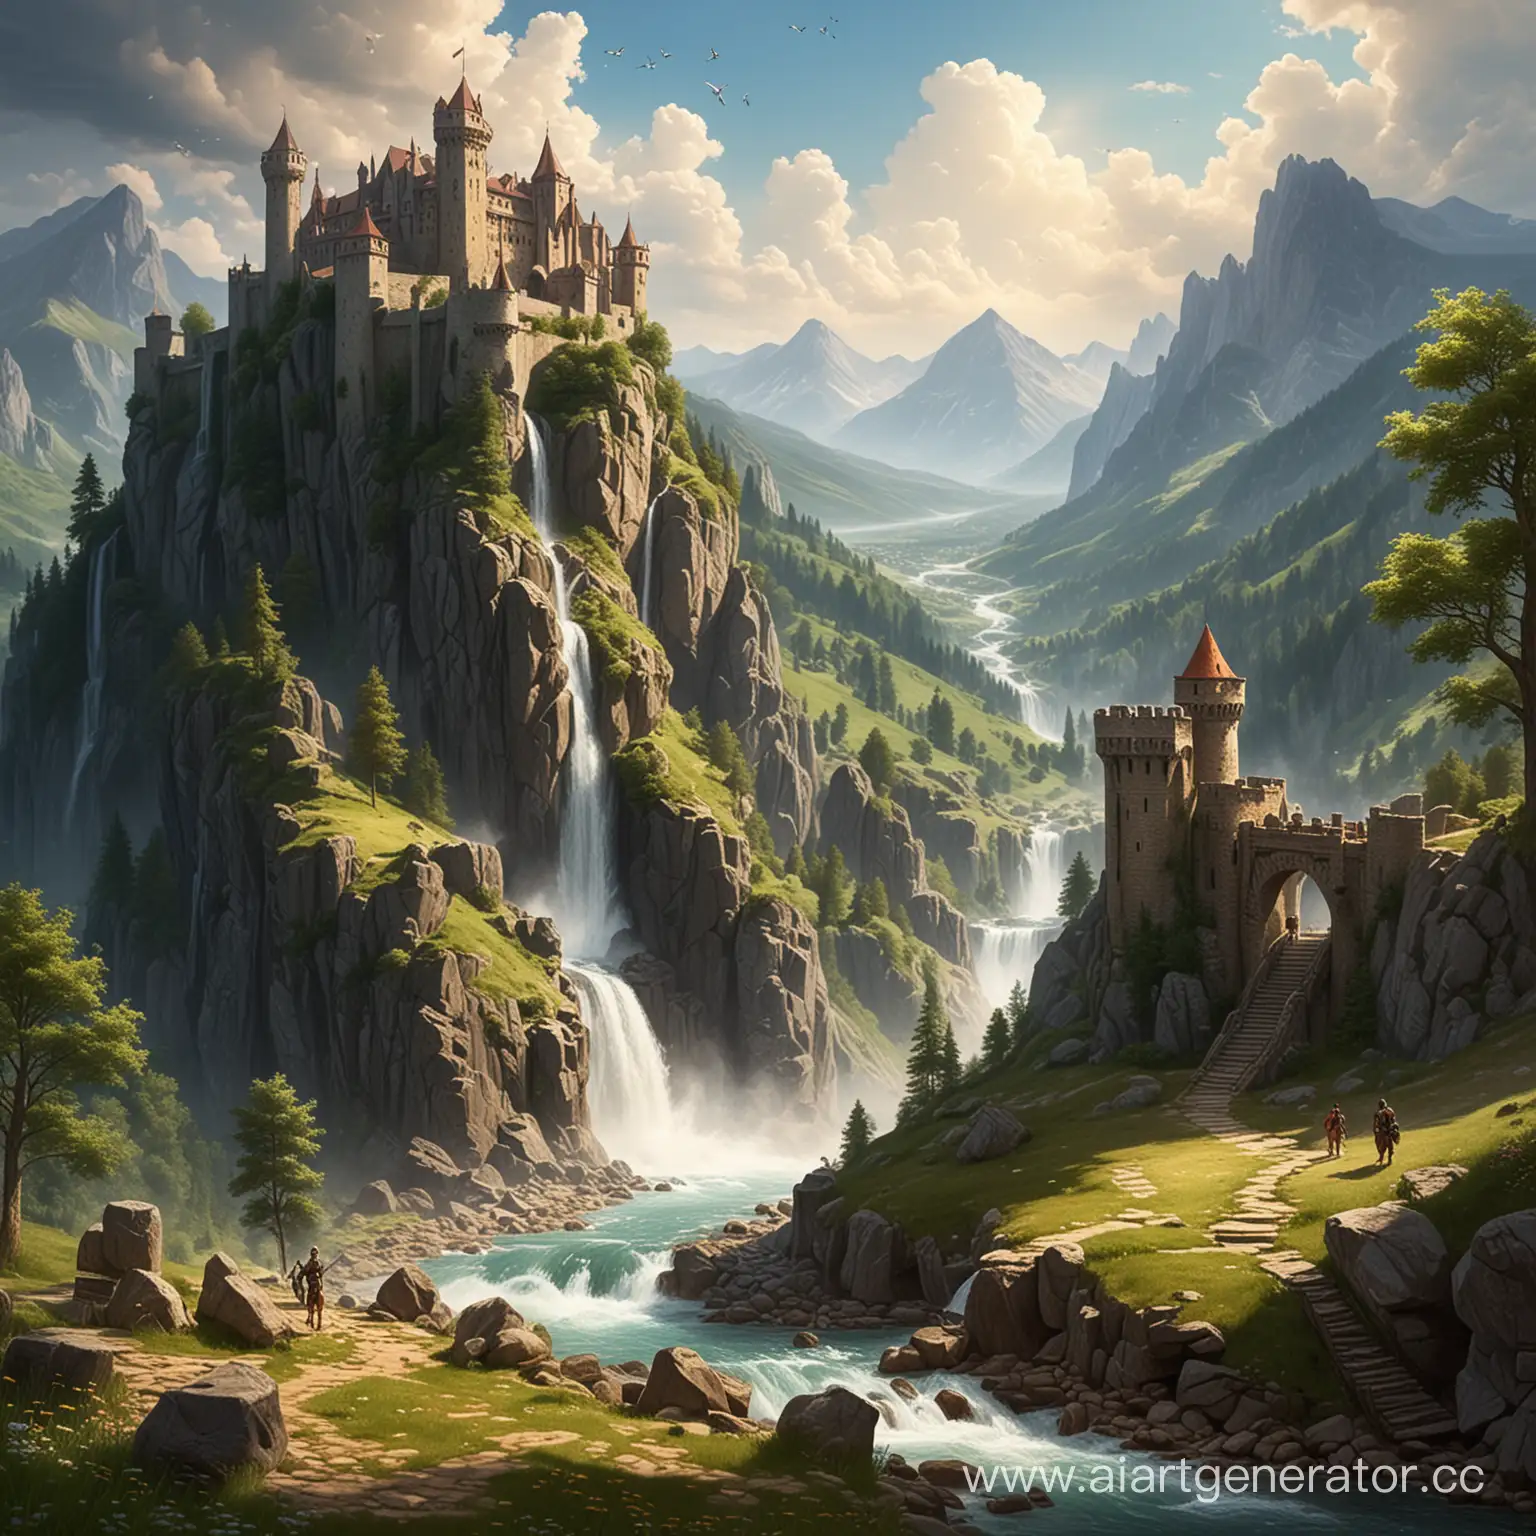 Горы лето на горе стоит замок к замку скачет рыцарь с другой горы стекает водопад. 
